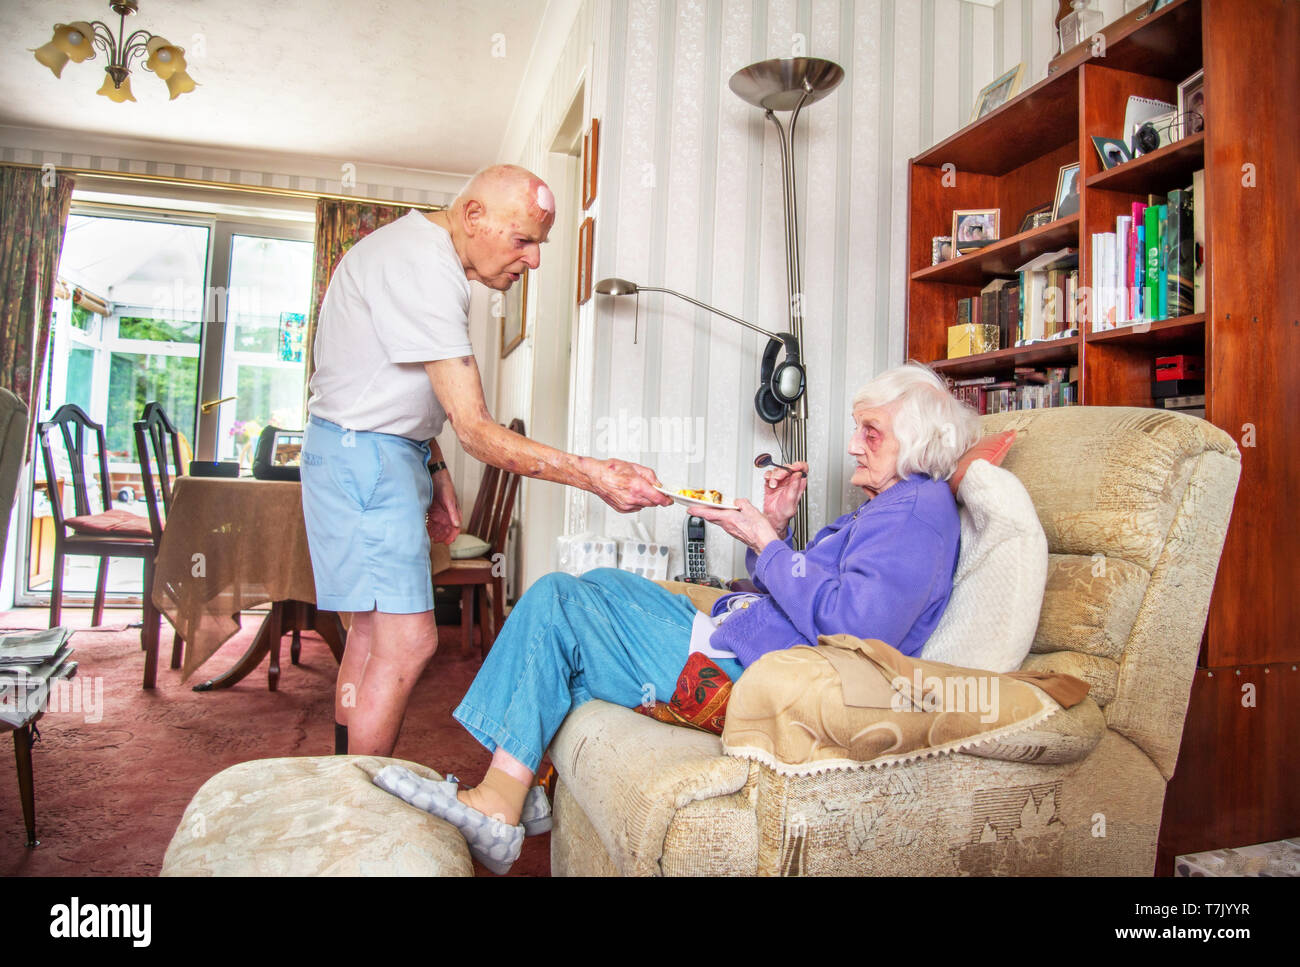 93 ans, homme, et avec l'état de coeur prend soin de ses gravement déficients visuels 90 ans femme prepaeres,cuisiniers et les repas et ne ménage pour elle. Banque D'Images